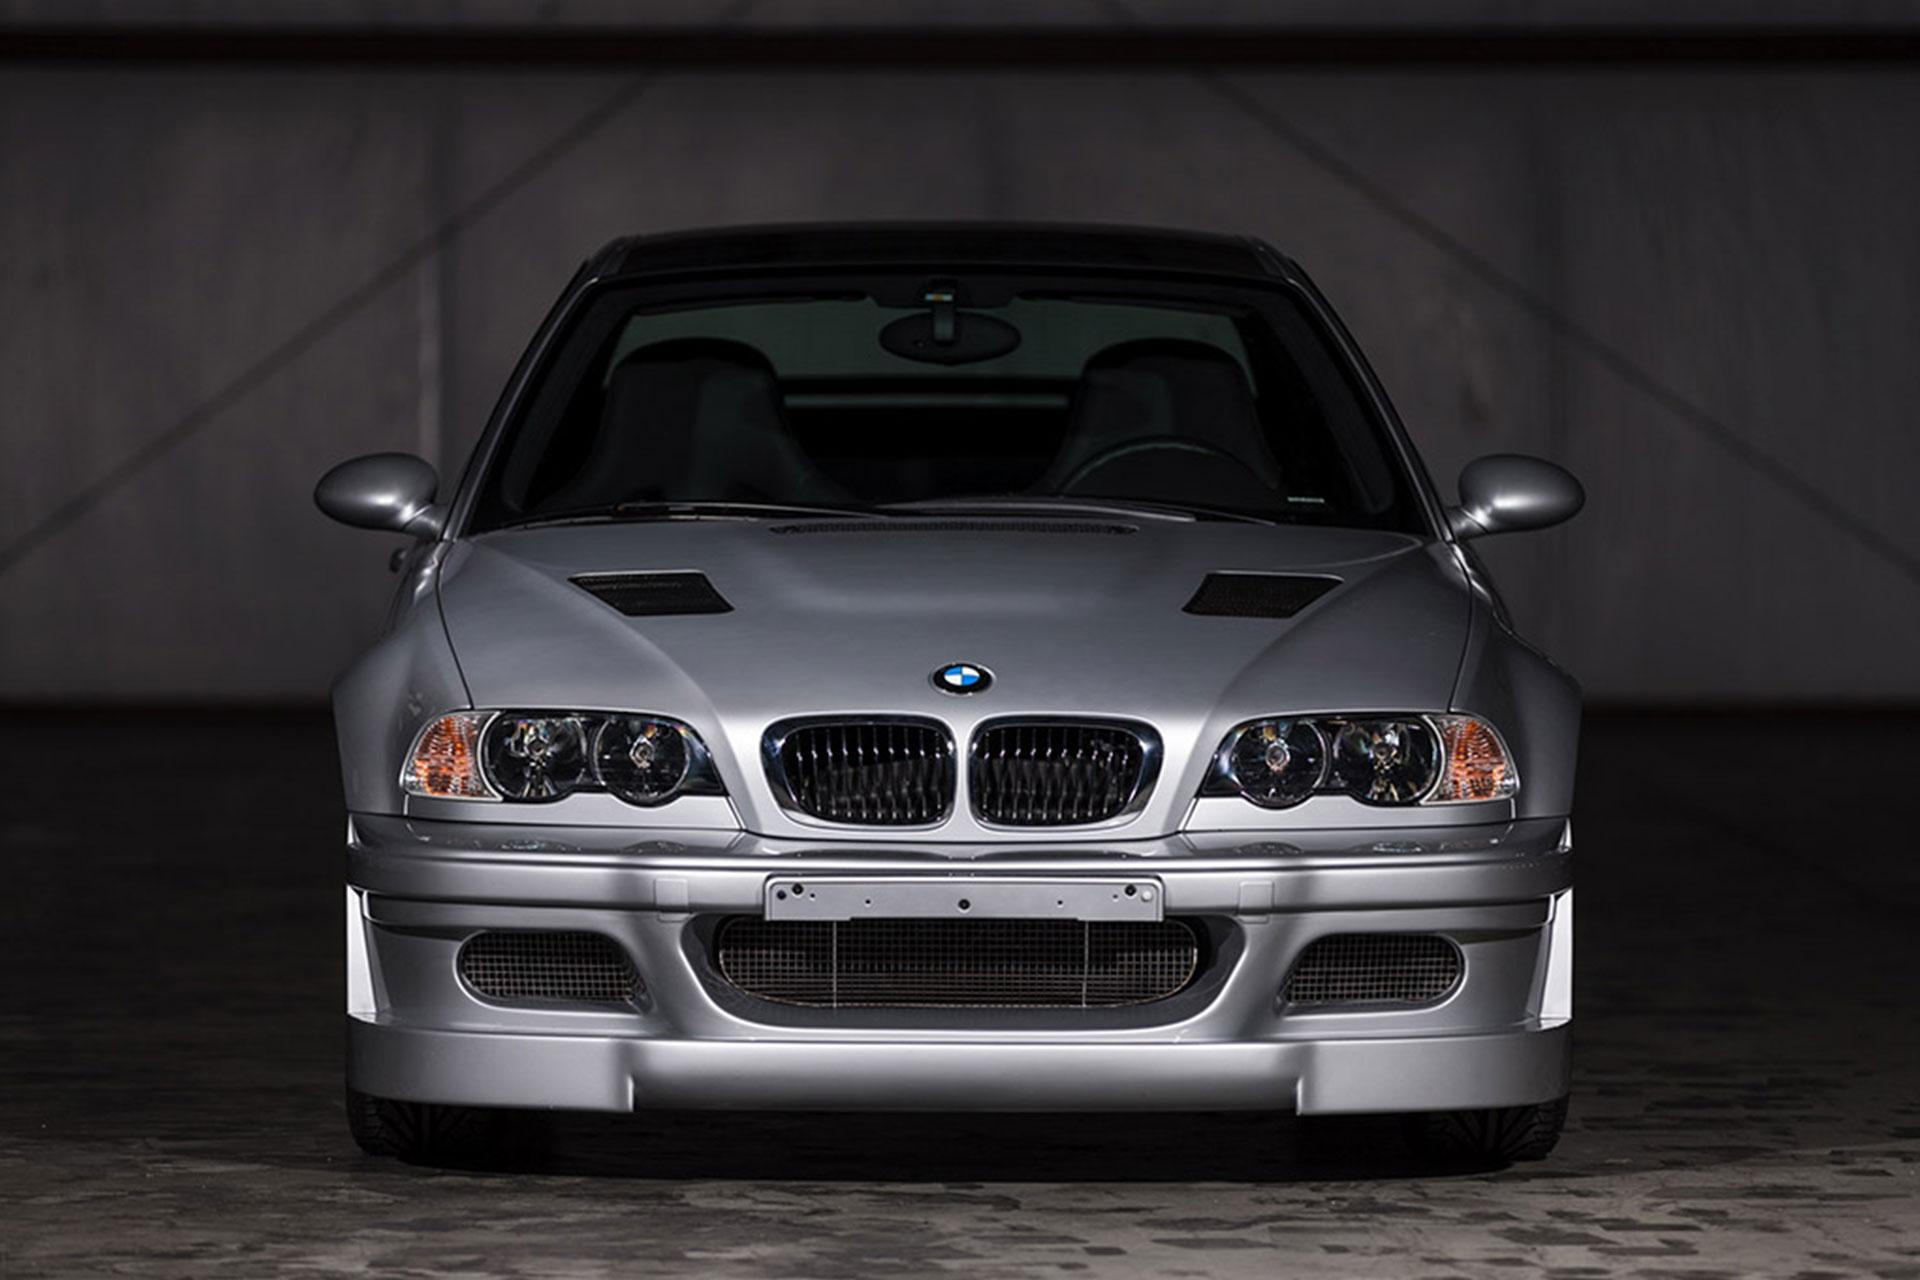 مرجع متخصصين ايران خودرو BMW M3 E46 از نماي جلو